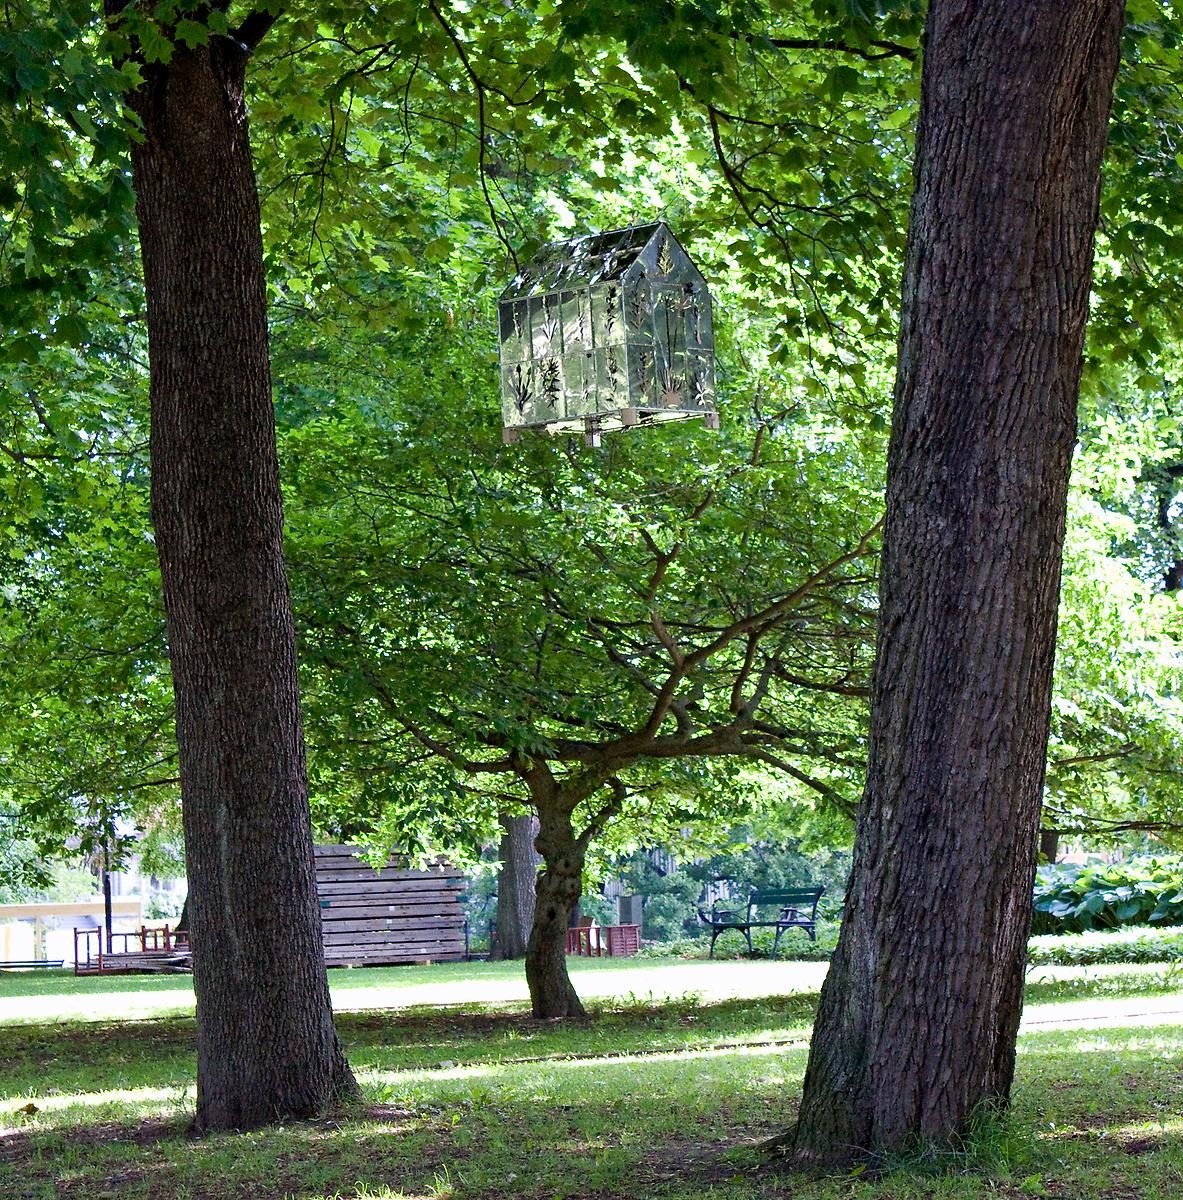 Uppe i luften mellan två träd hänger ett litet silvrigt växthus. 